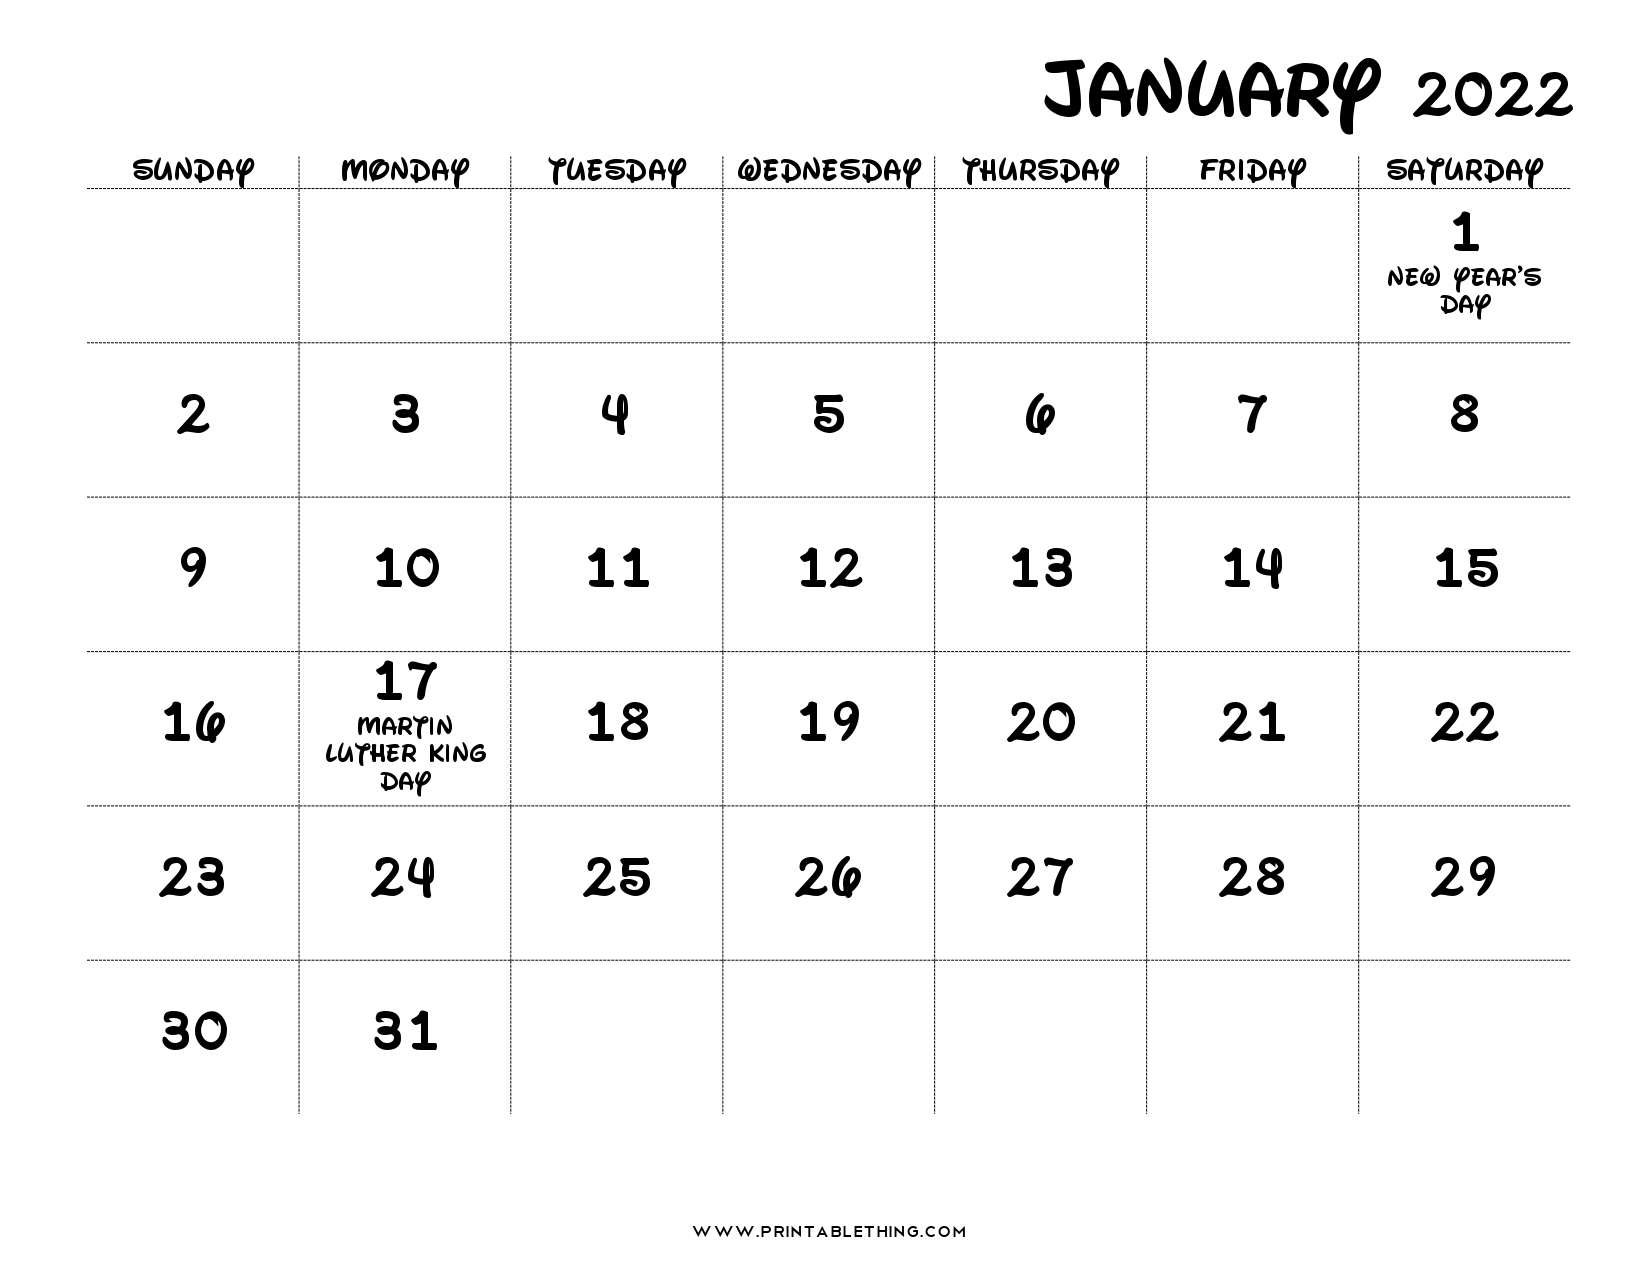 Get March 20 2022 Calendar